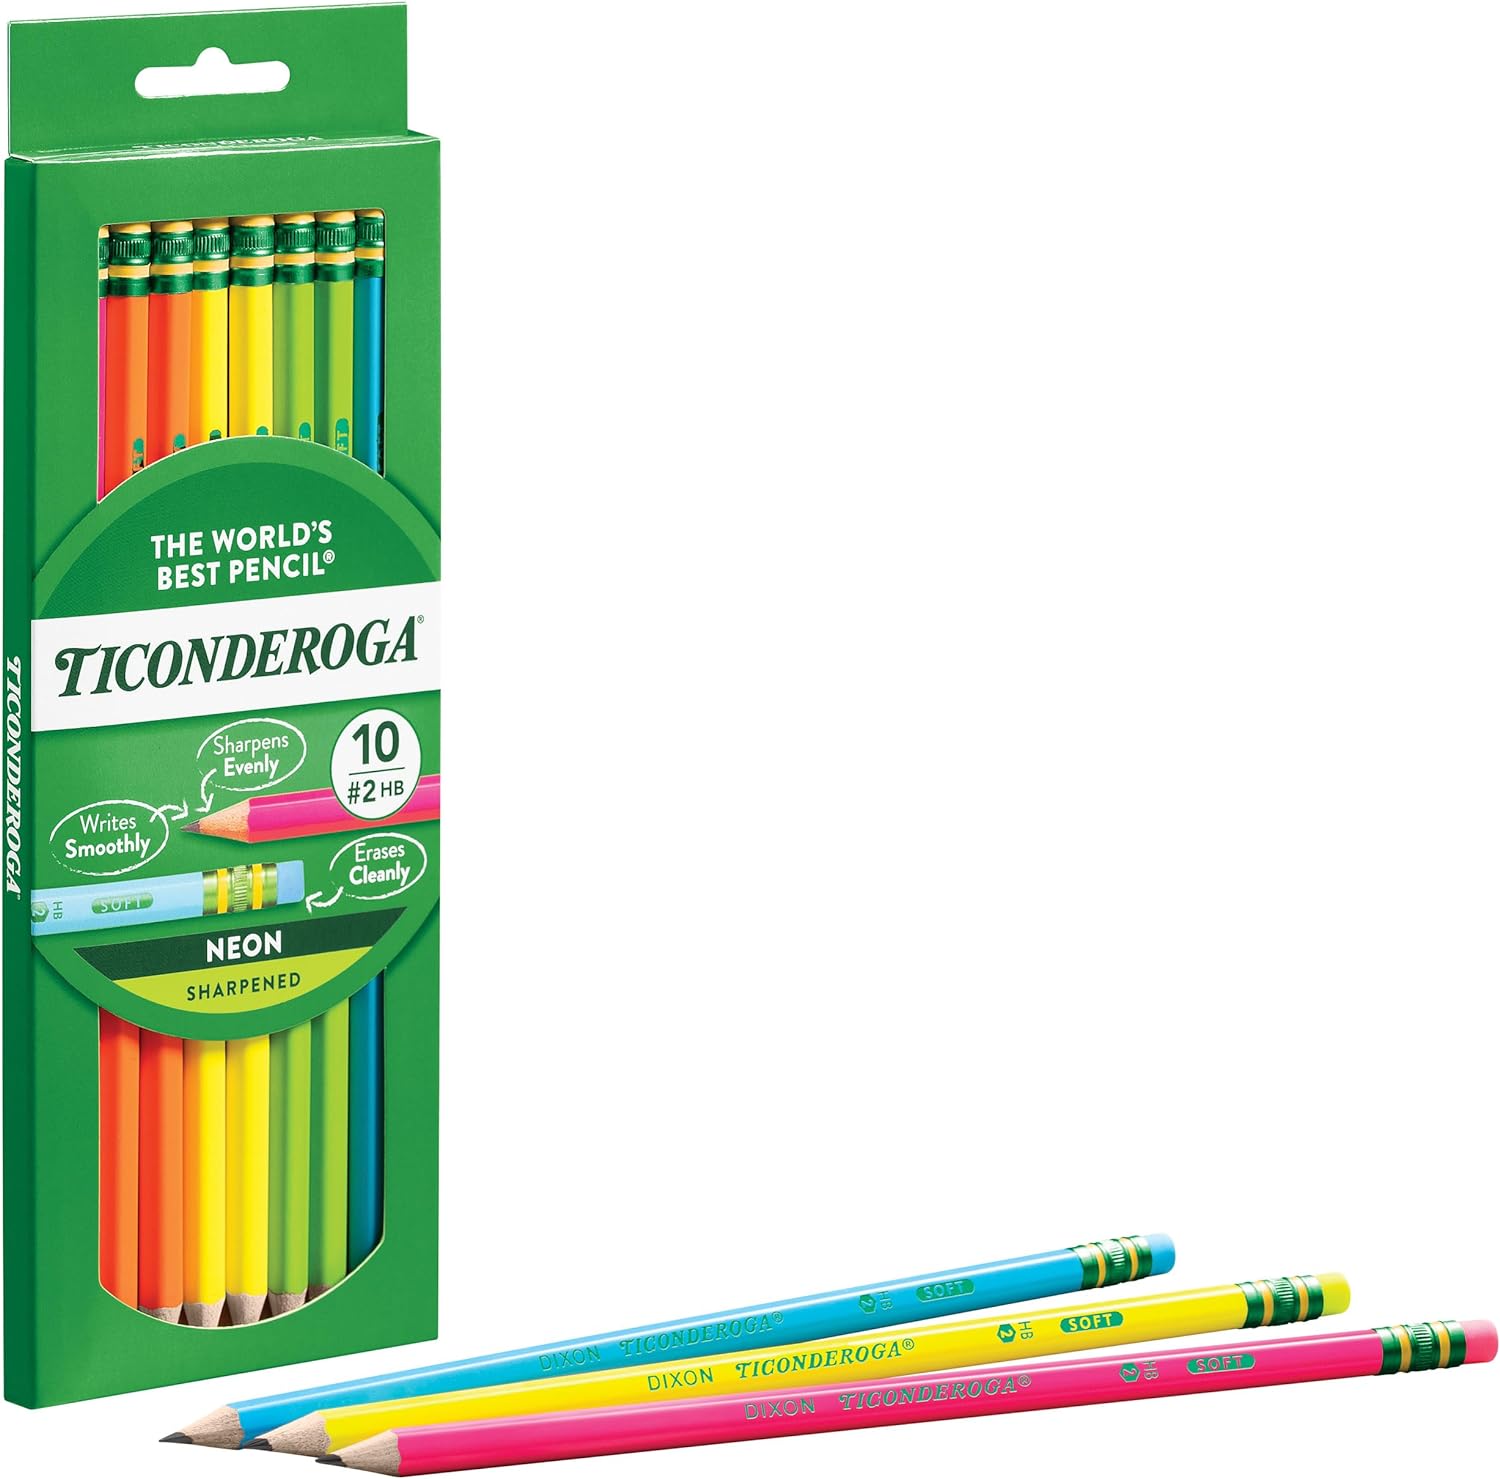 Erasable Colored Pencils, Blue, Pack of 12 - DIX14209, Dixon Ticonderoga  Company